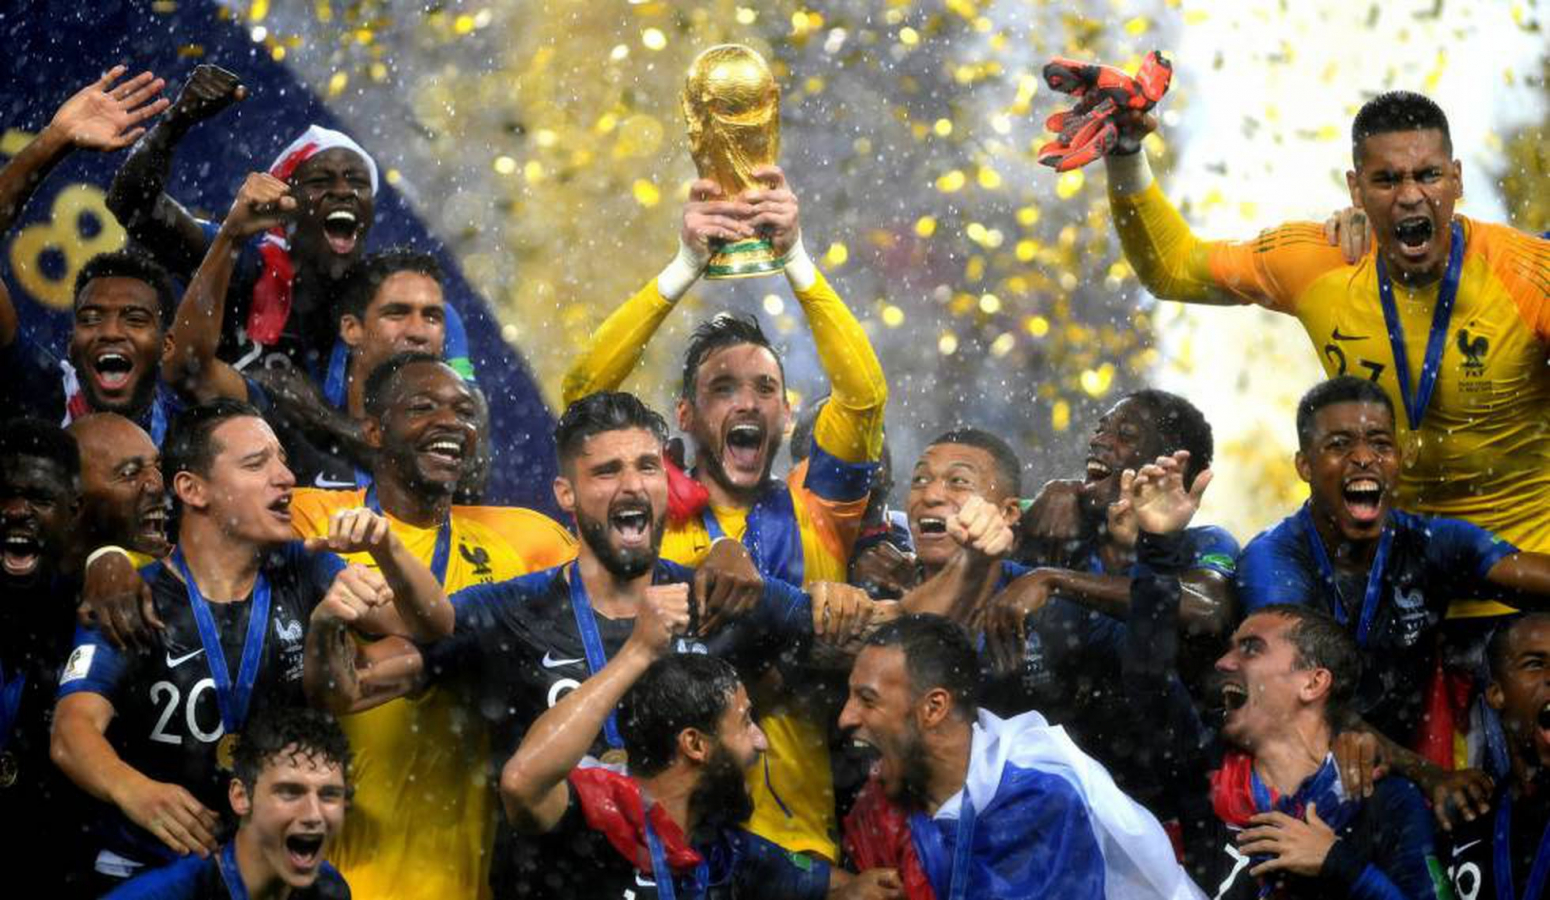 Presidente da Fifa volta a defender Copa do Mundo a cada dois anos